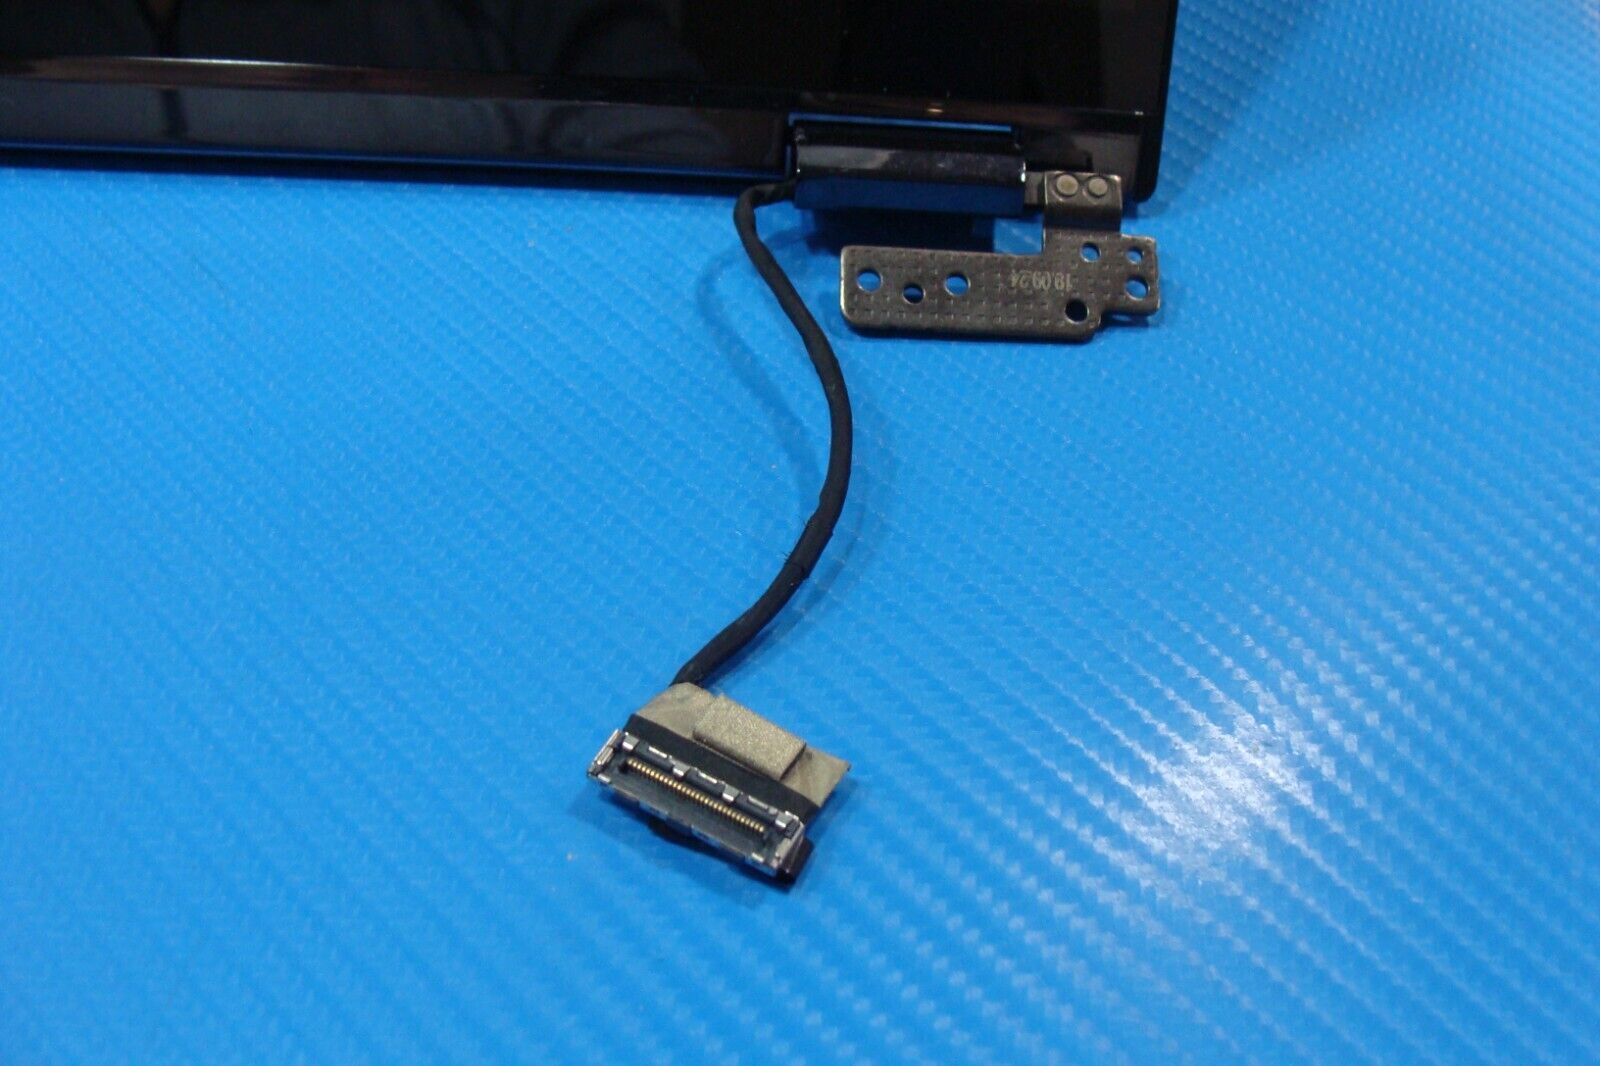 Asus ZenBook Q547F 15.6